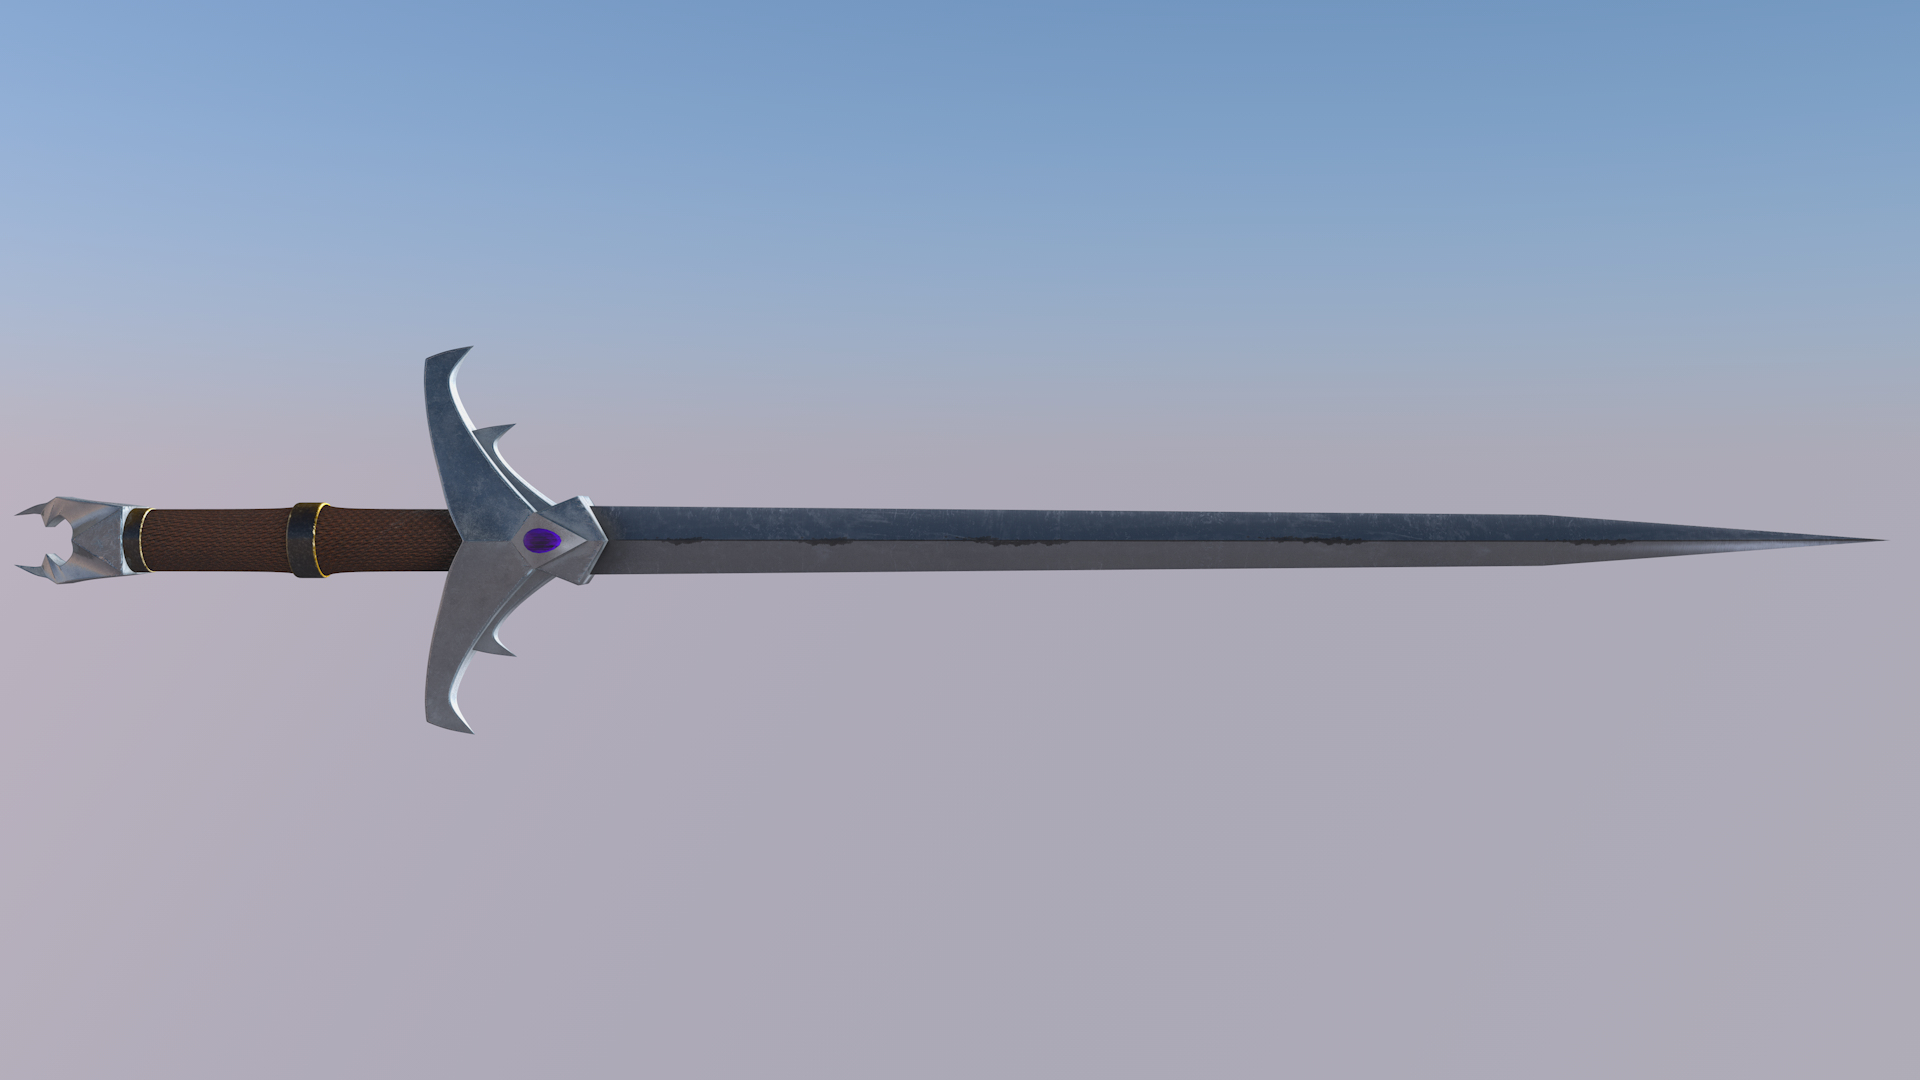 Fantasy sword model - TurboSquid 1457836